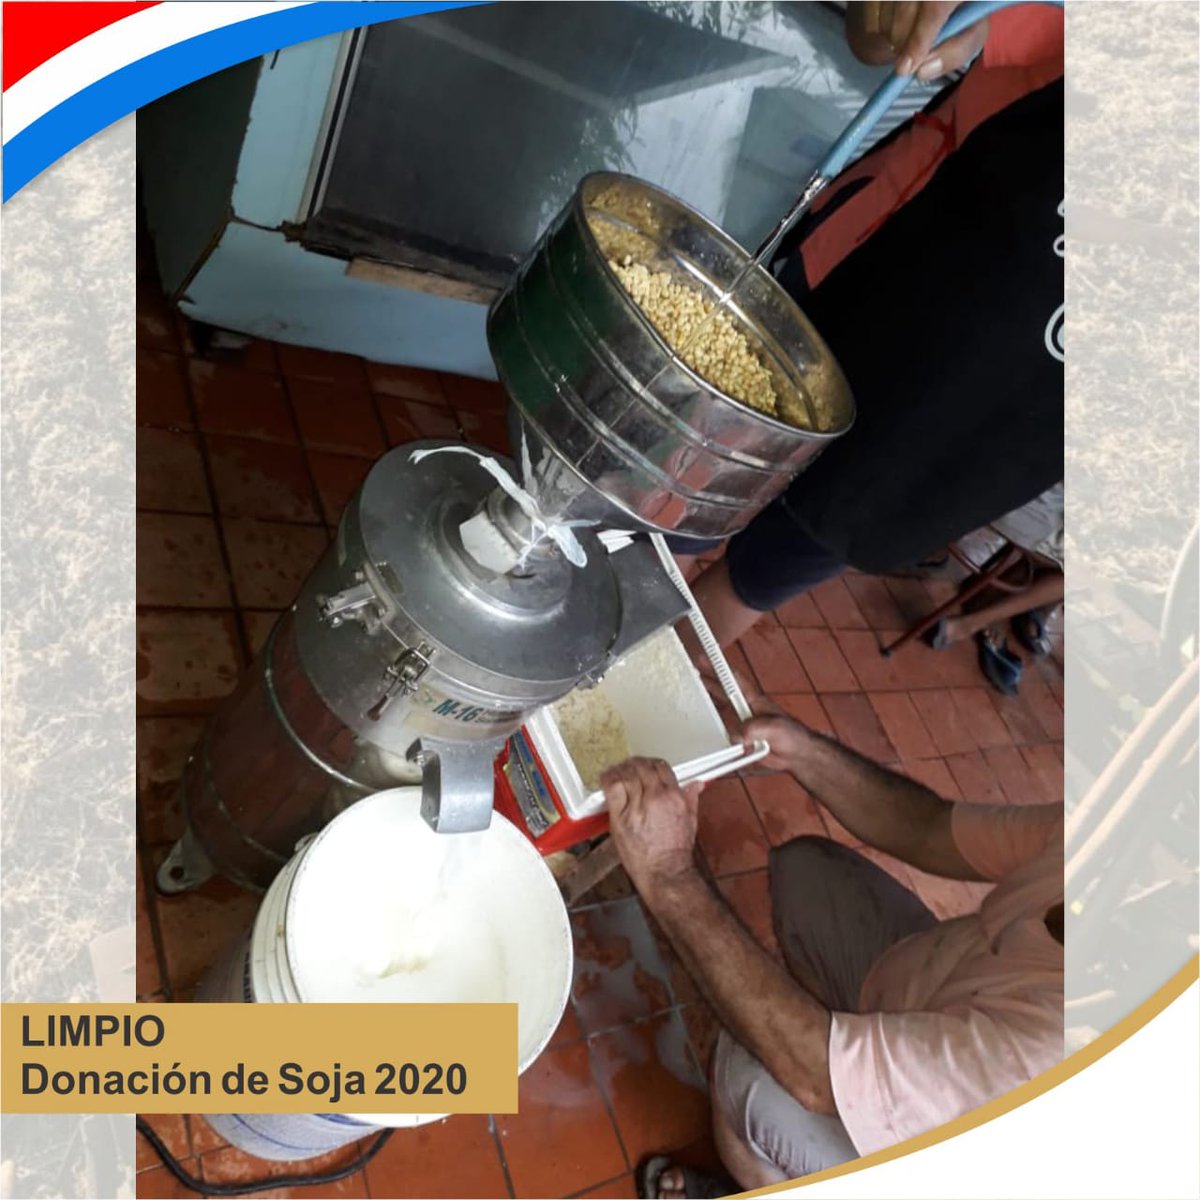 En Limpio se está preparando leche o jugo de soja🥛Con la soja que entregamos esta semana🚚
#FuerzaParaguay #DonaciónDeAlimentos #ollapopularpy #ElCampoNoPara #DonaciónSoja #lechedesoja #productores 👩🏽‍🌾👨🏻‍🌾